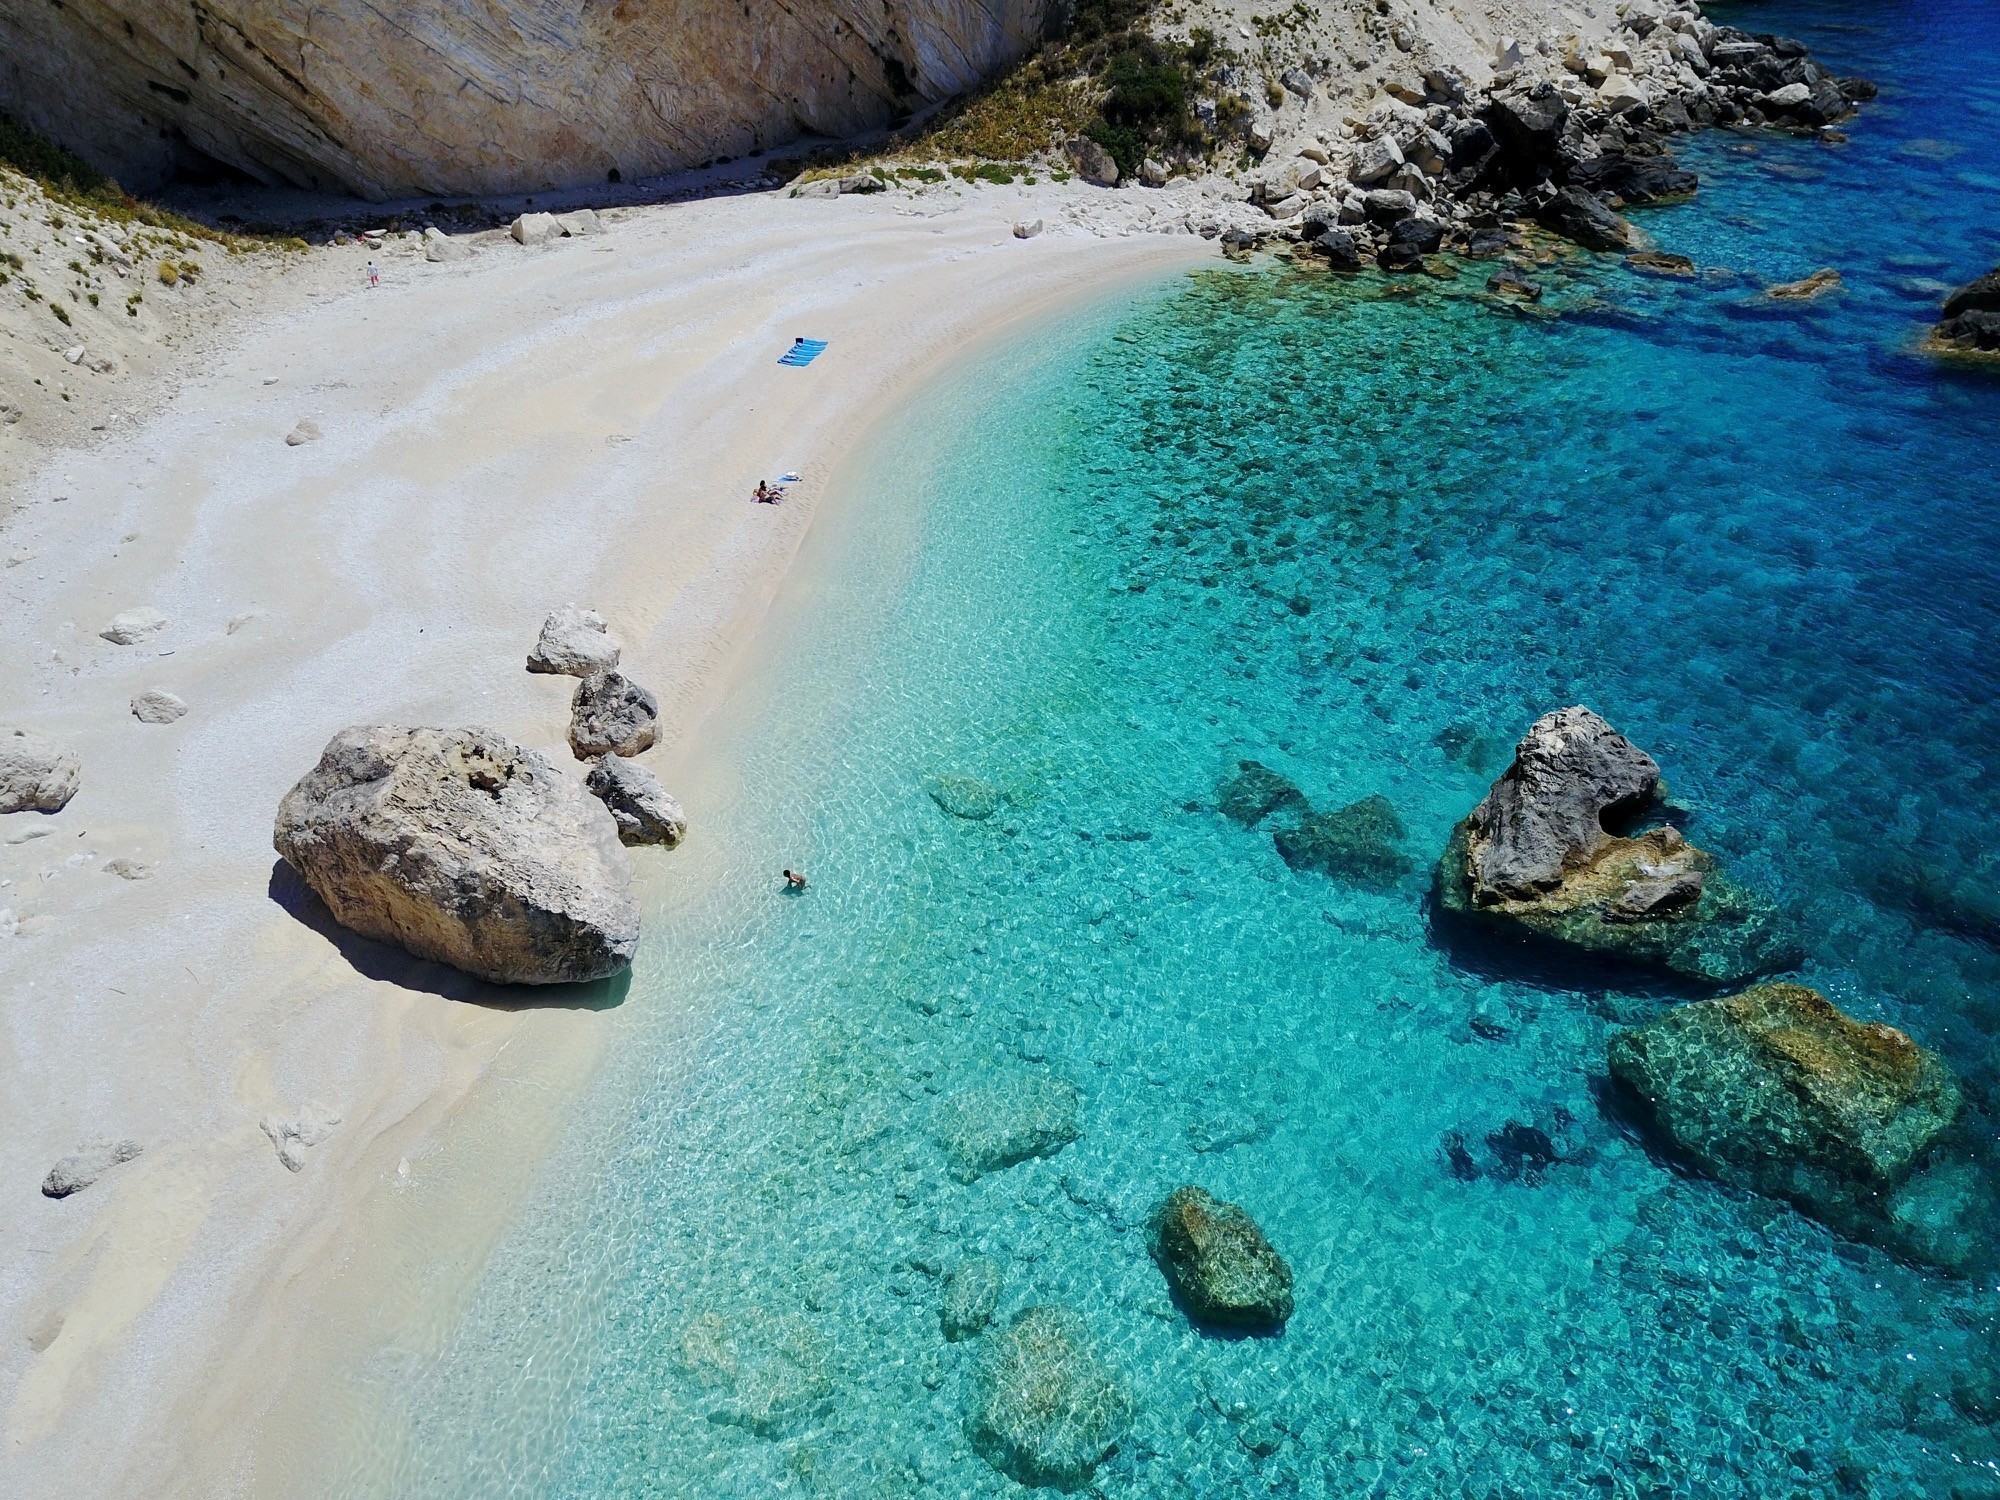 “Αυτή είναι η κορυφαία ελληνική παραλία” – Η συναρπαστική ιστορία πίσω από την έκδοση 100 Μαγευτικές Ελληνικές Παραλίες, που κυκλοφορεί την Κυριακή με το Θέμα